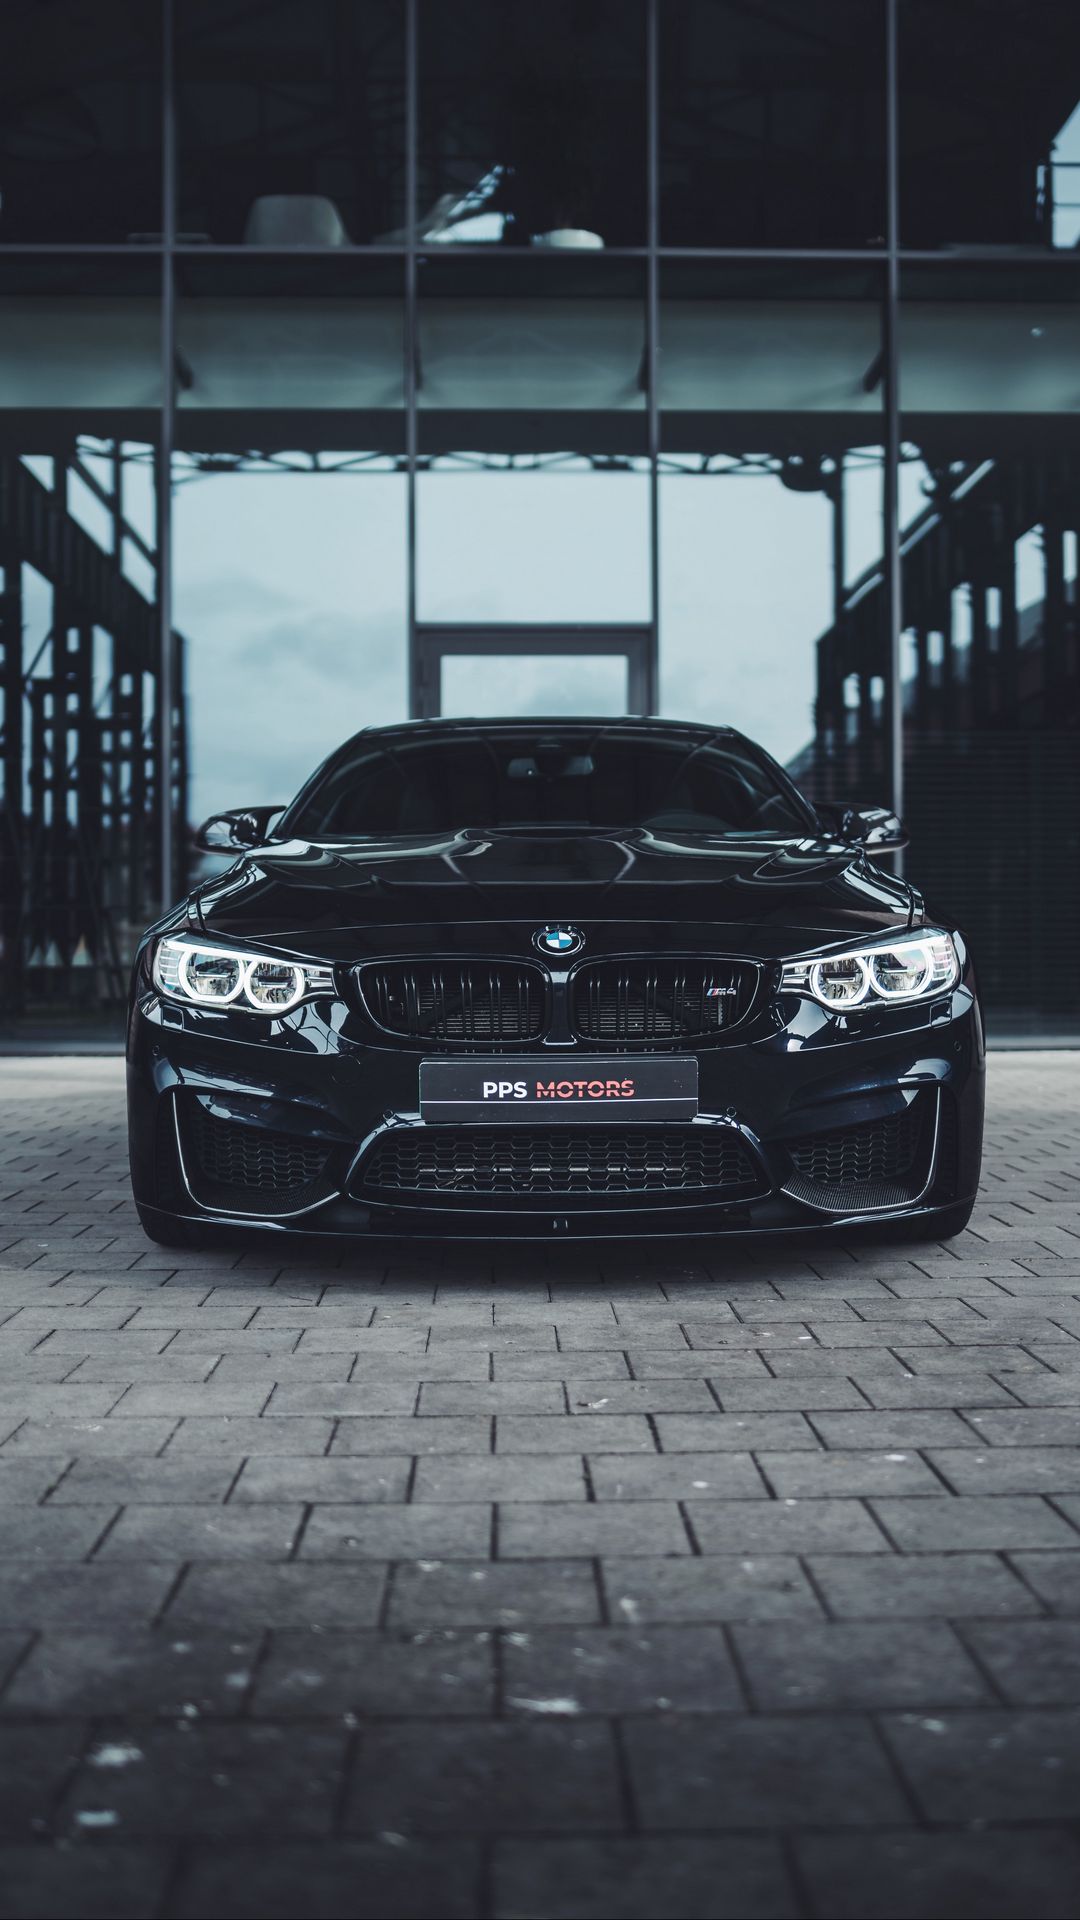 Bạn đang tìm kiếm hình nền xe ô tô đẳng cấp để trang trí cho màn hình điện thoại của mình? Đừng bỏ lỡ bộ sưu tập hình nền BMW đầy lôi cuốn trên trang web của chúng tôi! Tải ngay để chiêm ngưỡng các thiết kế xe huyền thoại của BMW và cập nhật phong cách của riêng mình. 